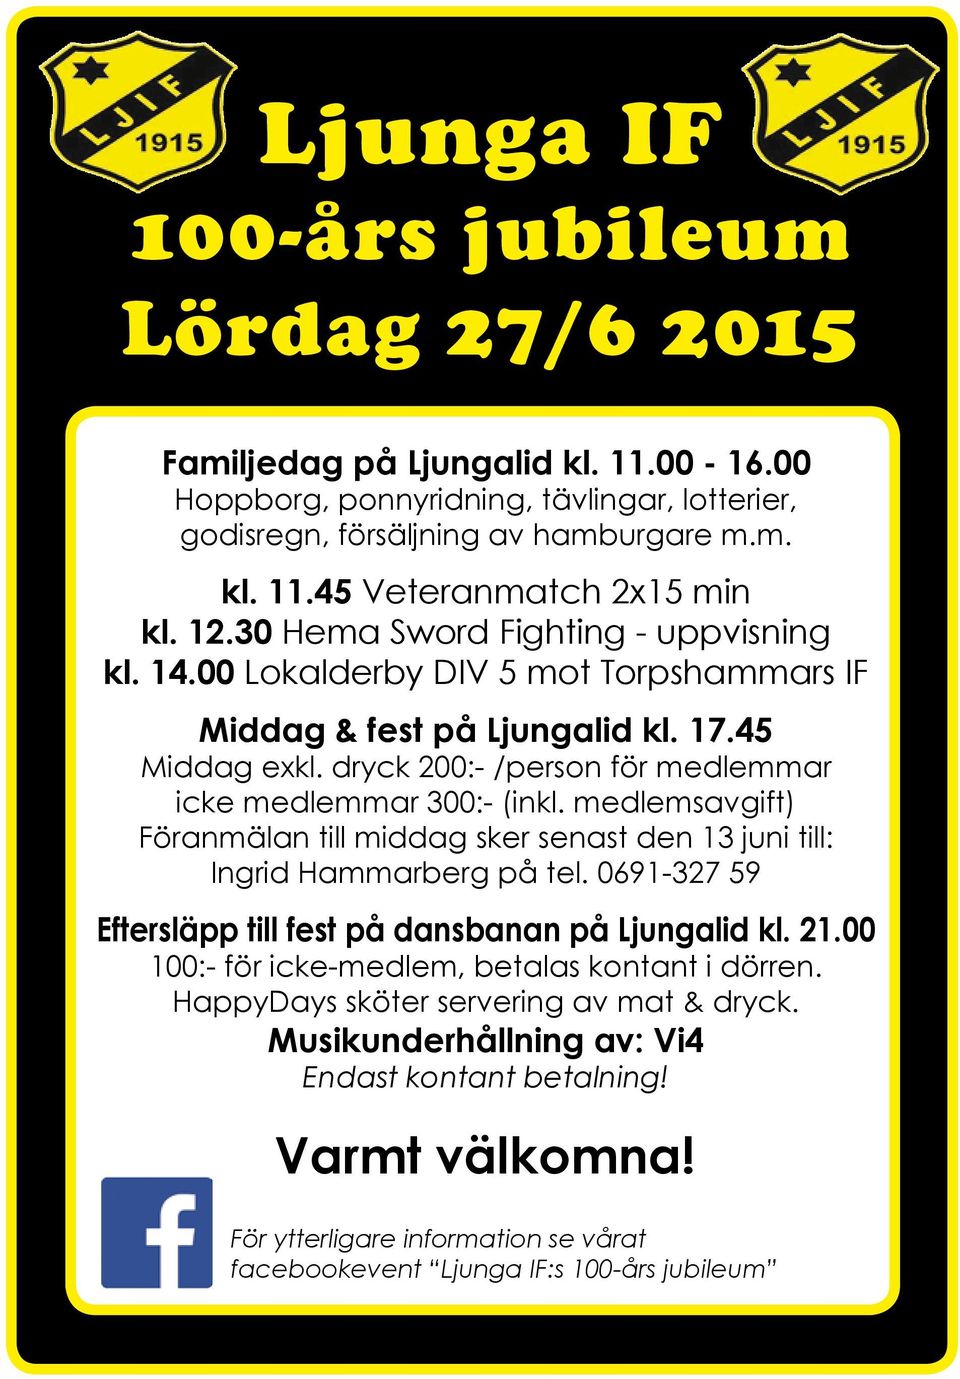 medlemsavgift) Föranmälan till middag sker senast den 13 juni till: Ingrid Hammarberg på tel. 0691-327 59 Eftersläpp till fest på dansbanan på Ljungalid kl. 21.